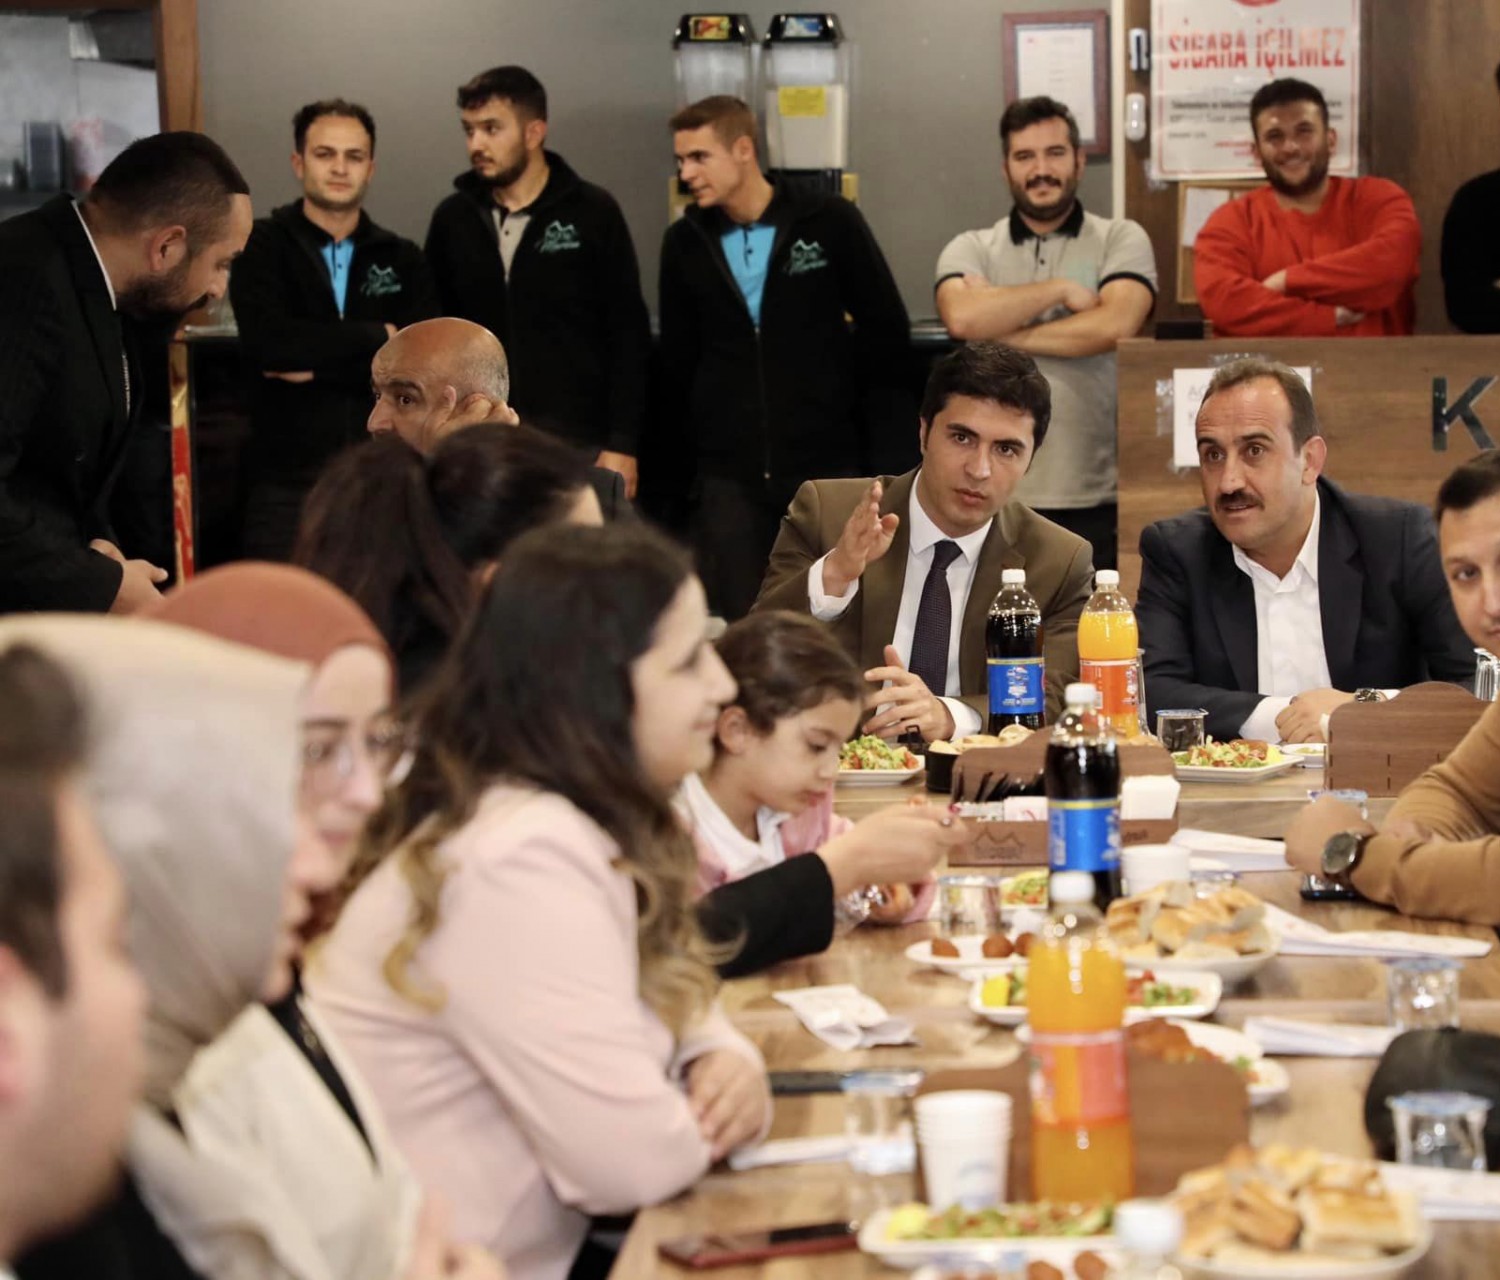 Belediye Başkanımız Av. Mustafa İlmek, ilçemiz Kaymakamı Sn. Aydın Göçer'in de katılımıyla 24 Kasım Öğretmenler Günü nedeniyle düzenlenen yemek programına katıldı.